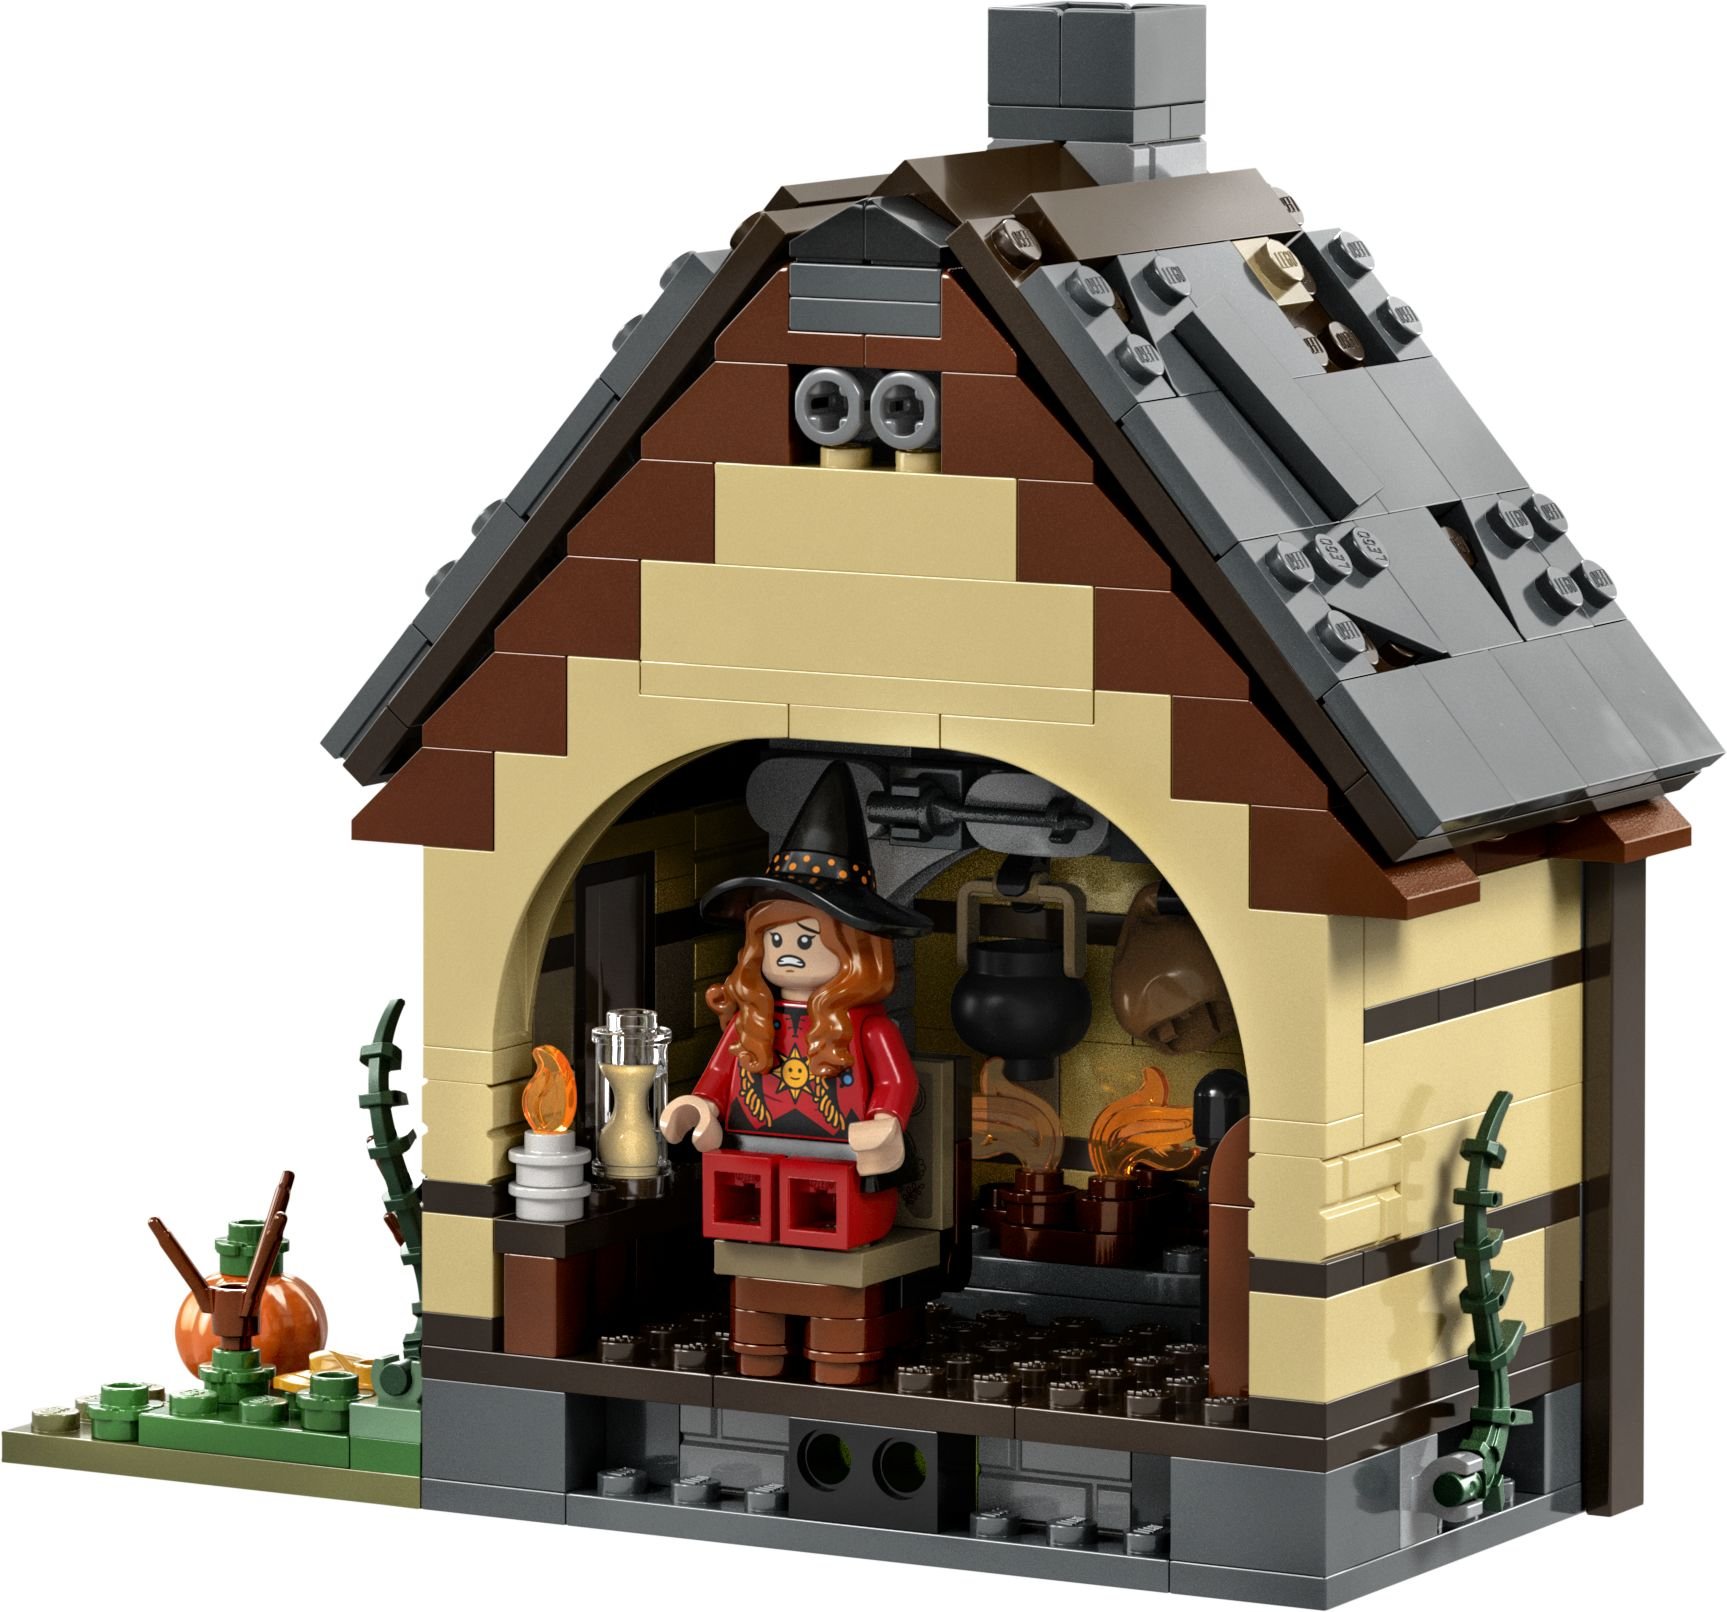 LEGO Ideas 21341 Disney Hocus Pocus: Das Hexenhaus der Sanderson-Schwestern LEGO_21341_Back_01_02.jpg